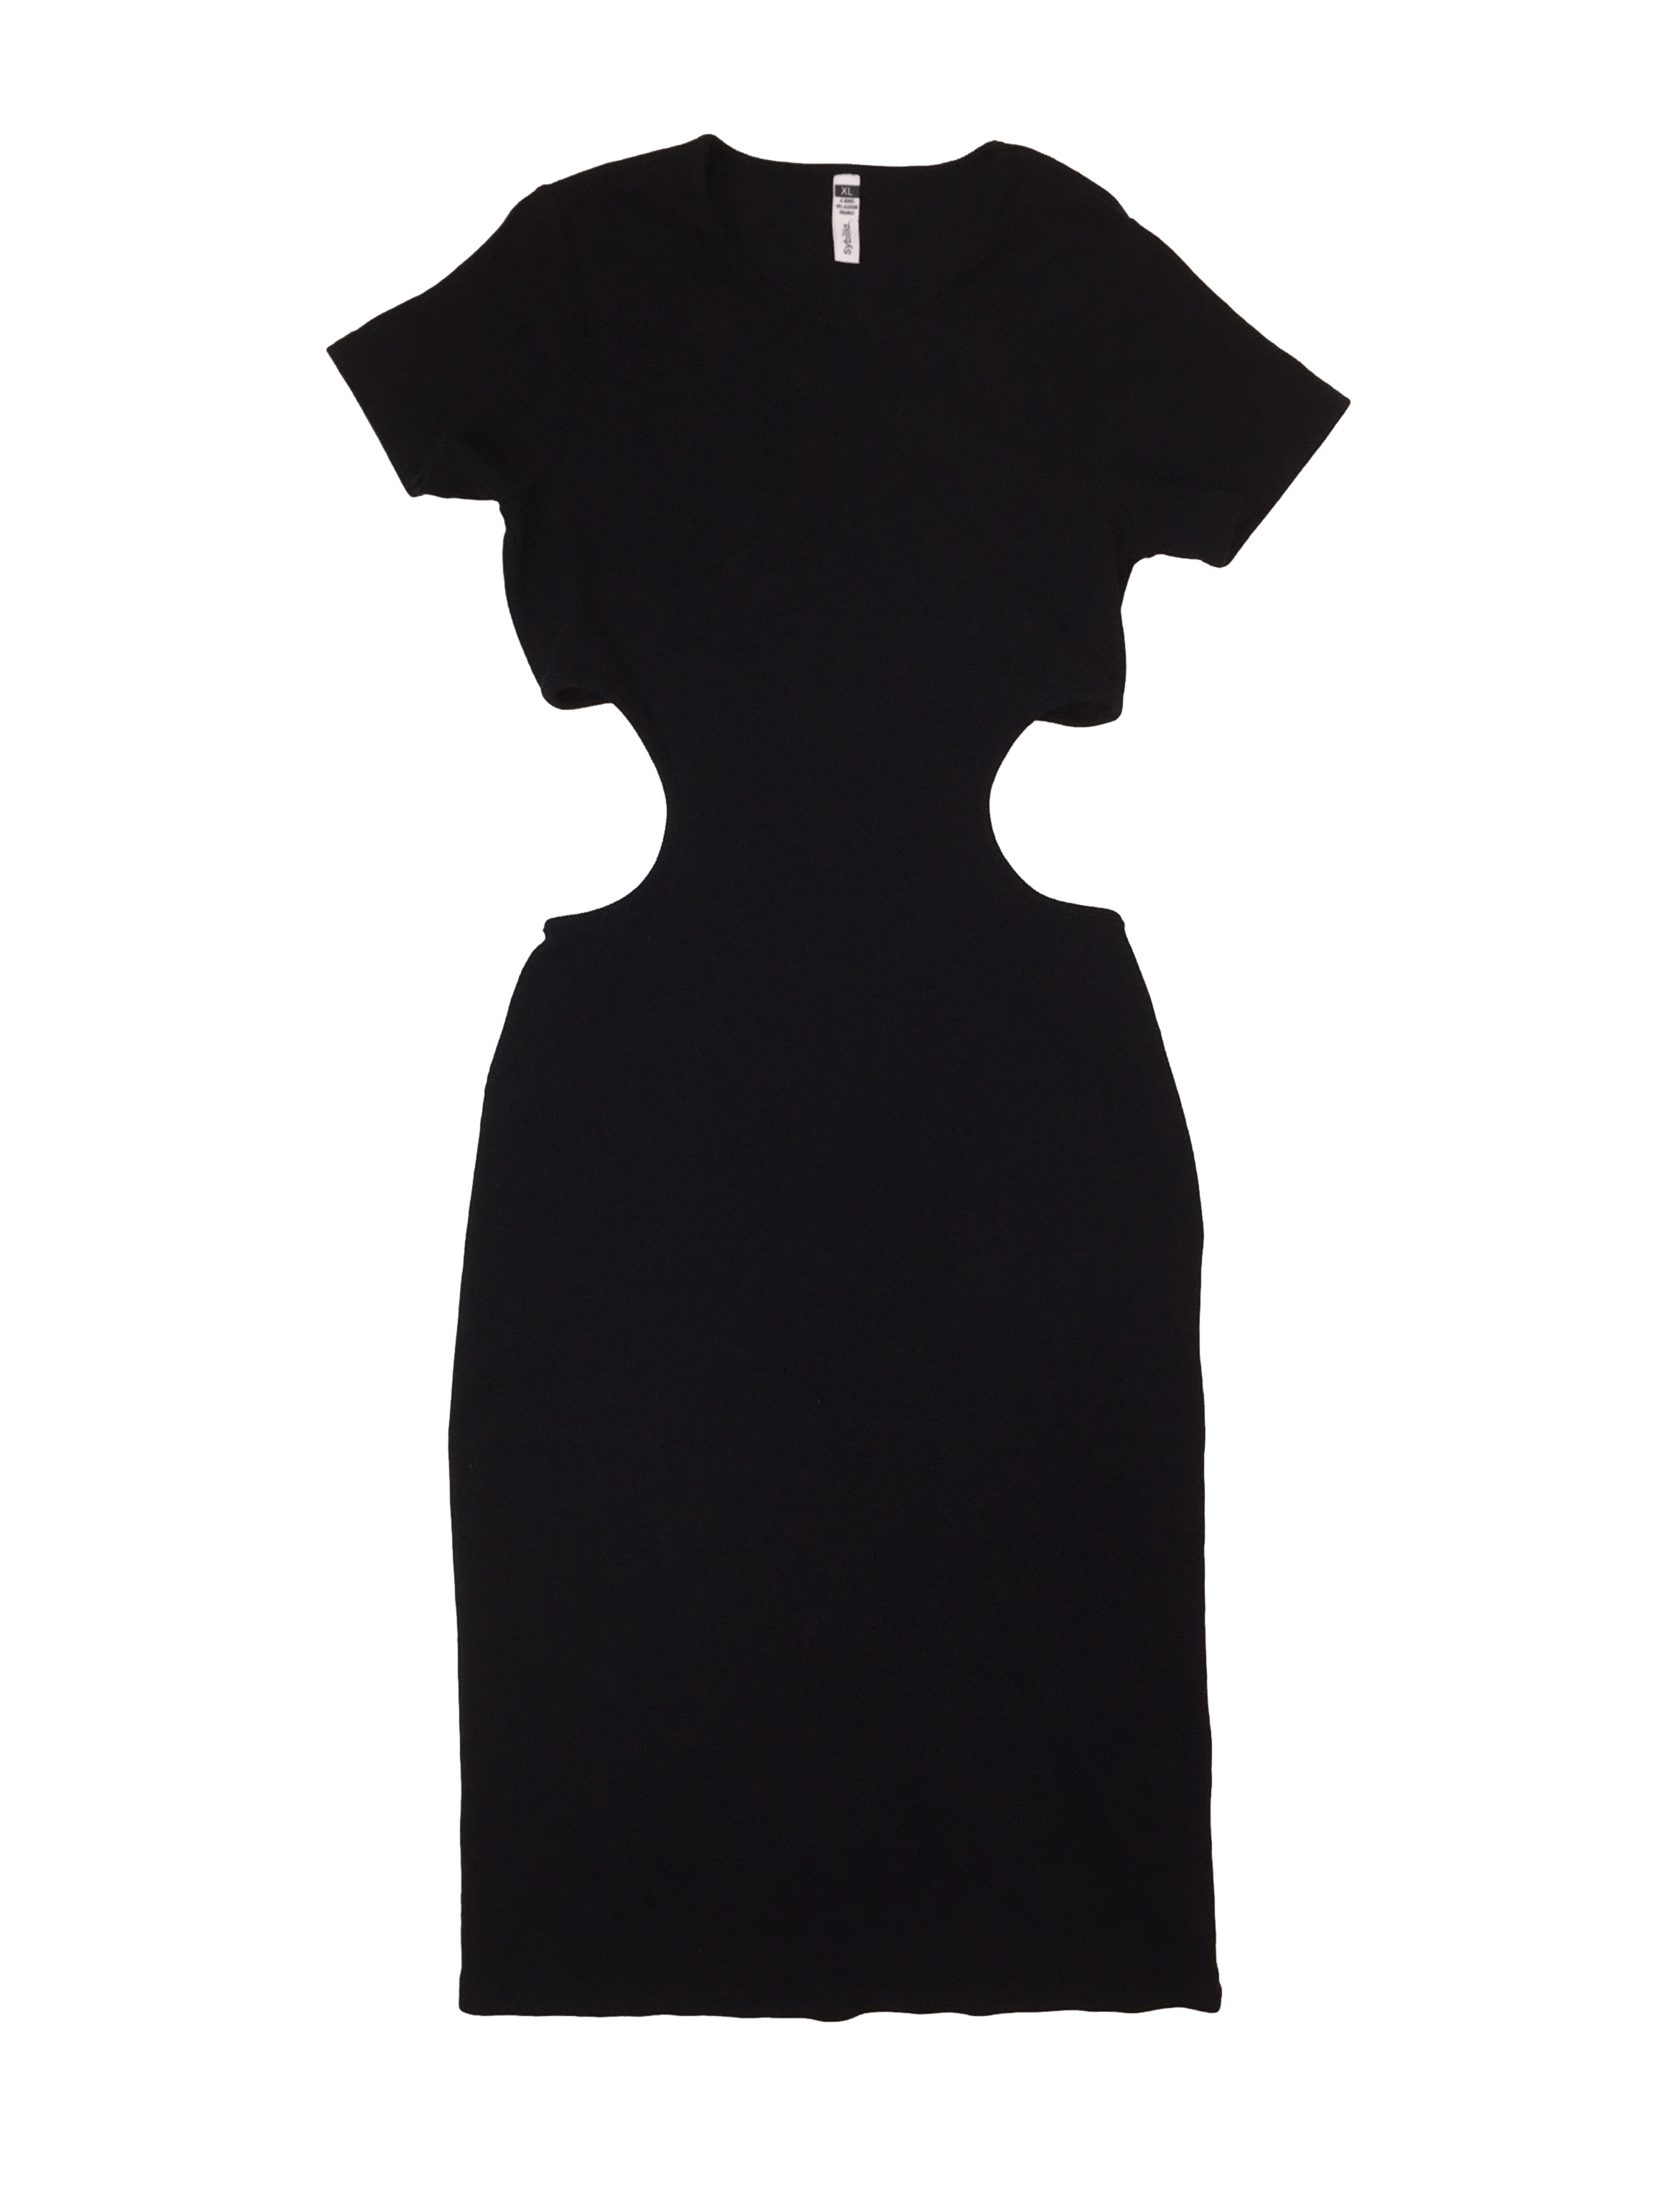 Vestido negro sybilla 95% algodón con escote media espalda. Busto 88 cm sin estirar, largo 122 cm.